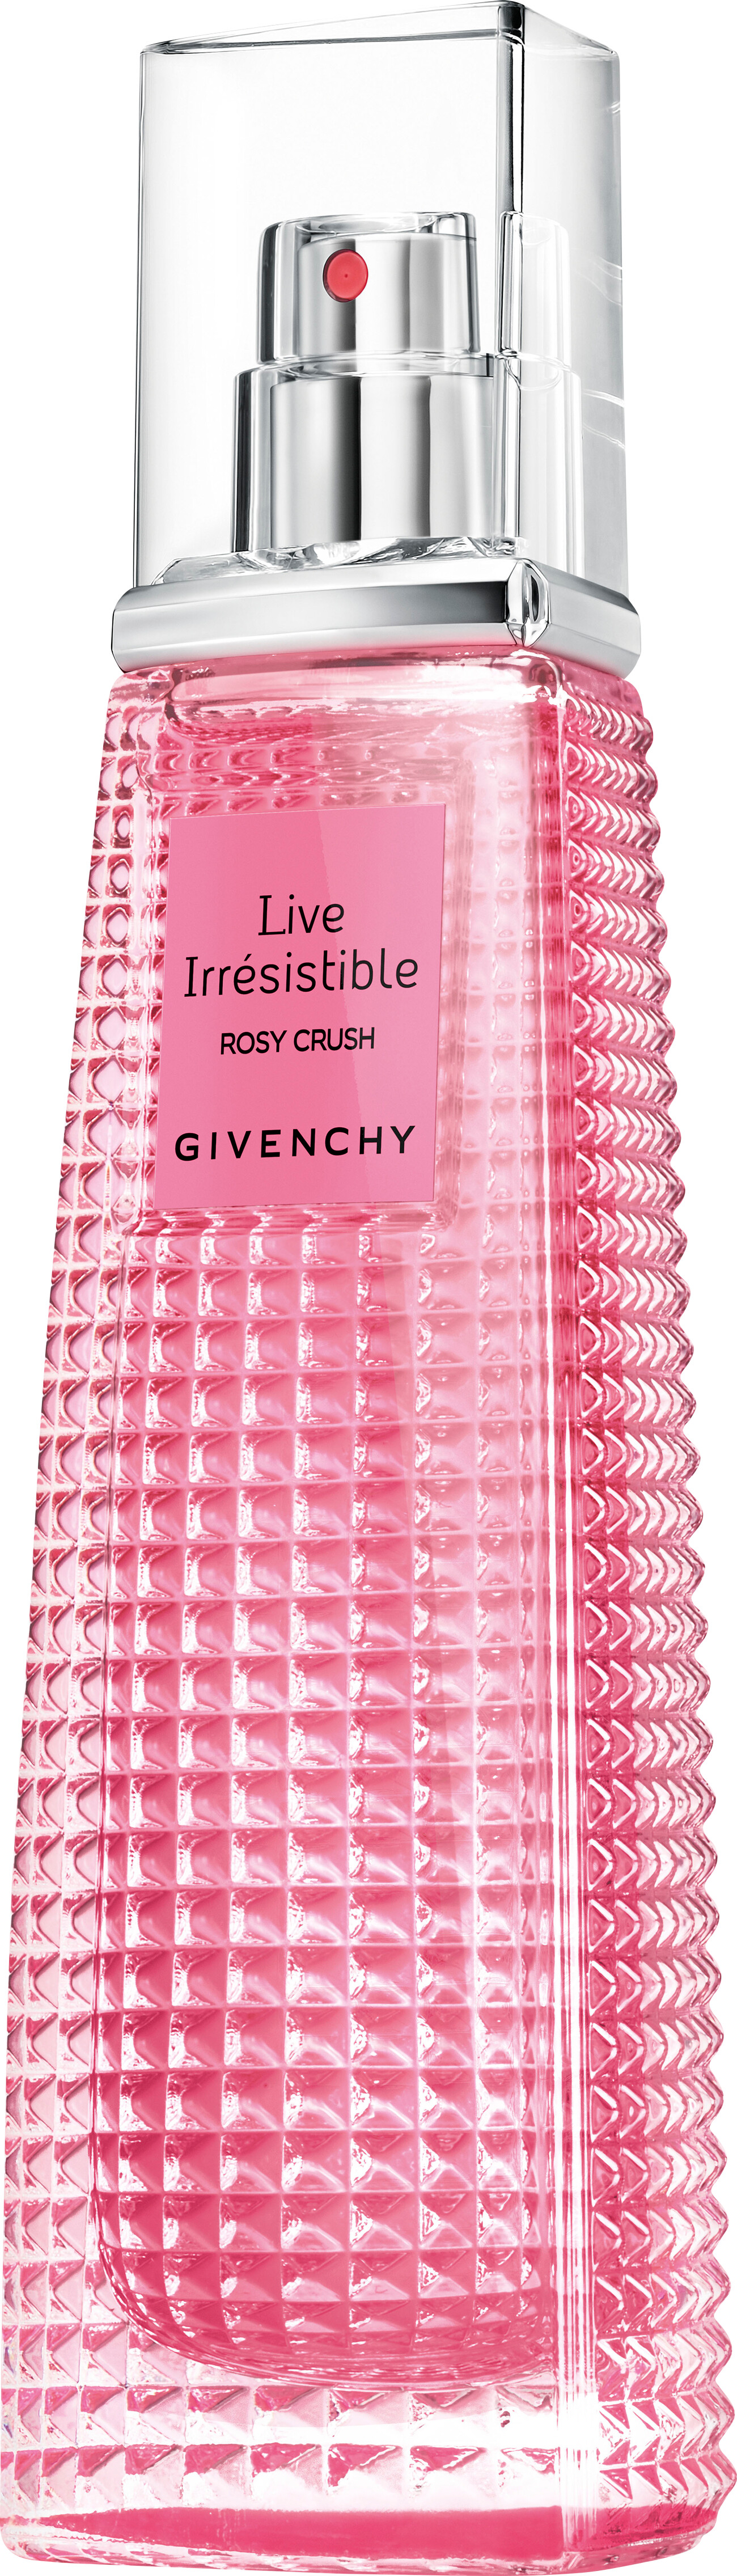 rosy crush